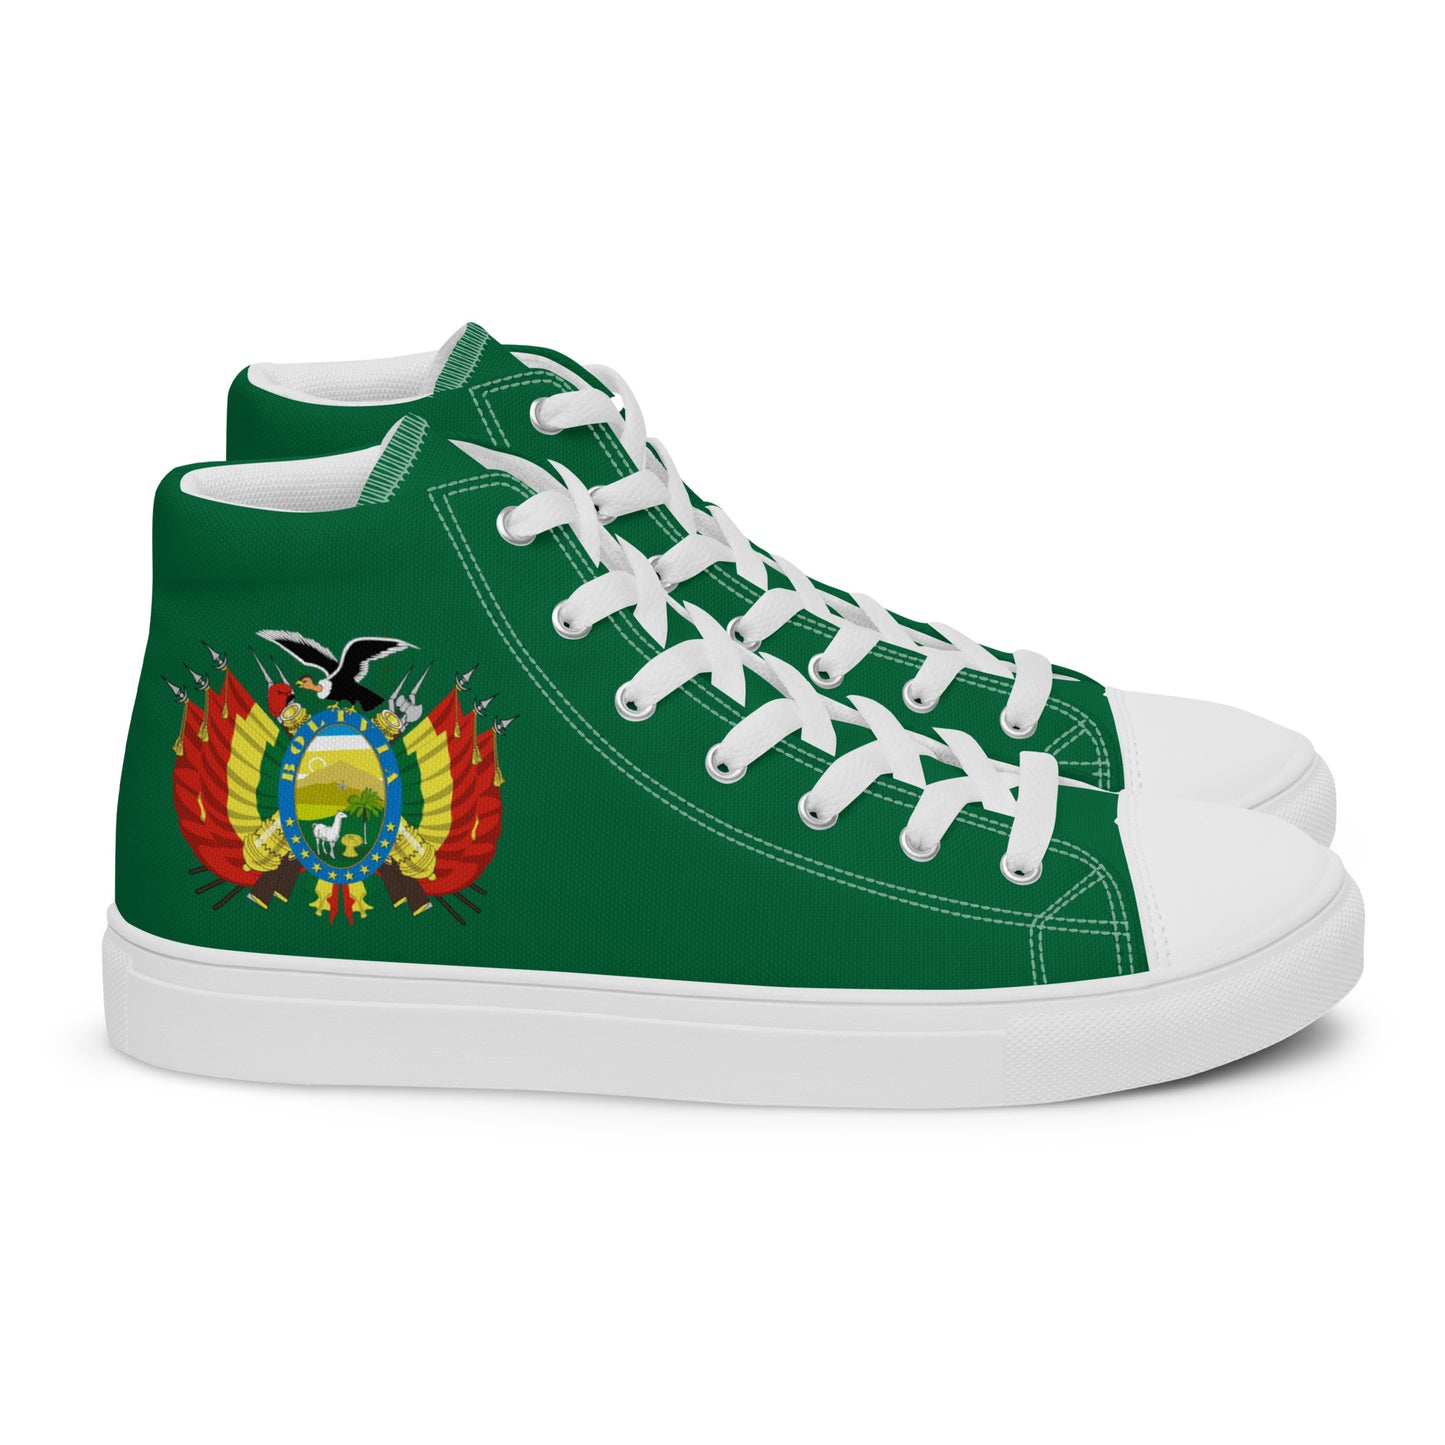 Bolivia - Men - Green - High top shoes